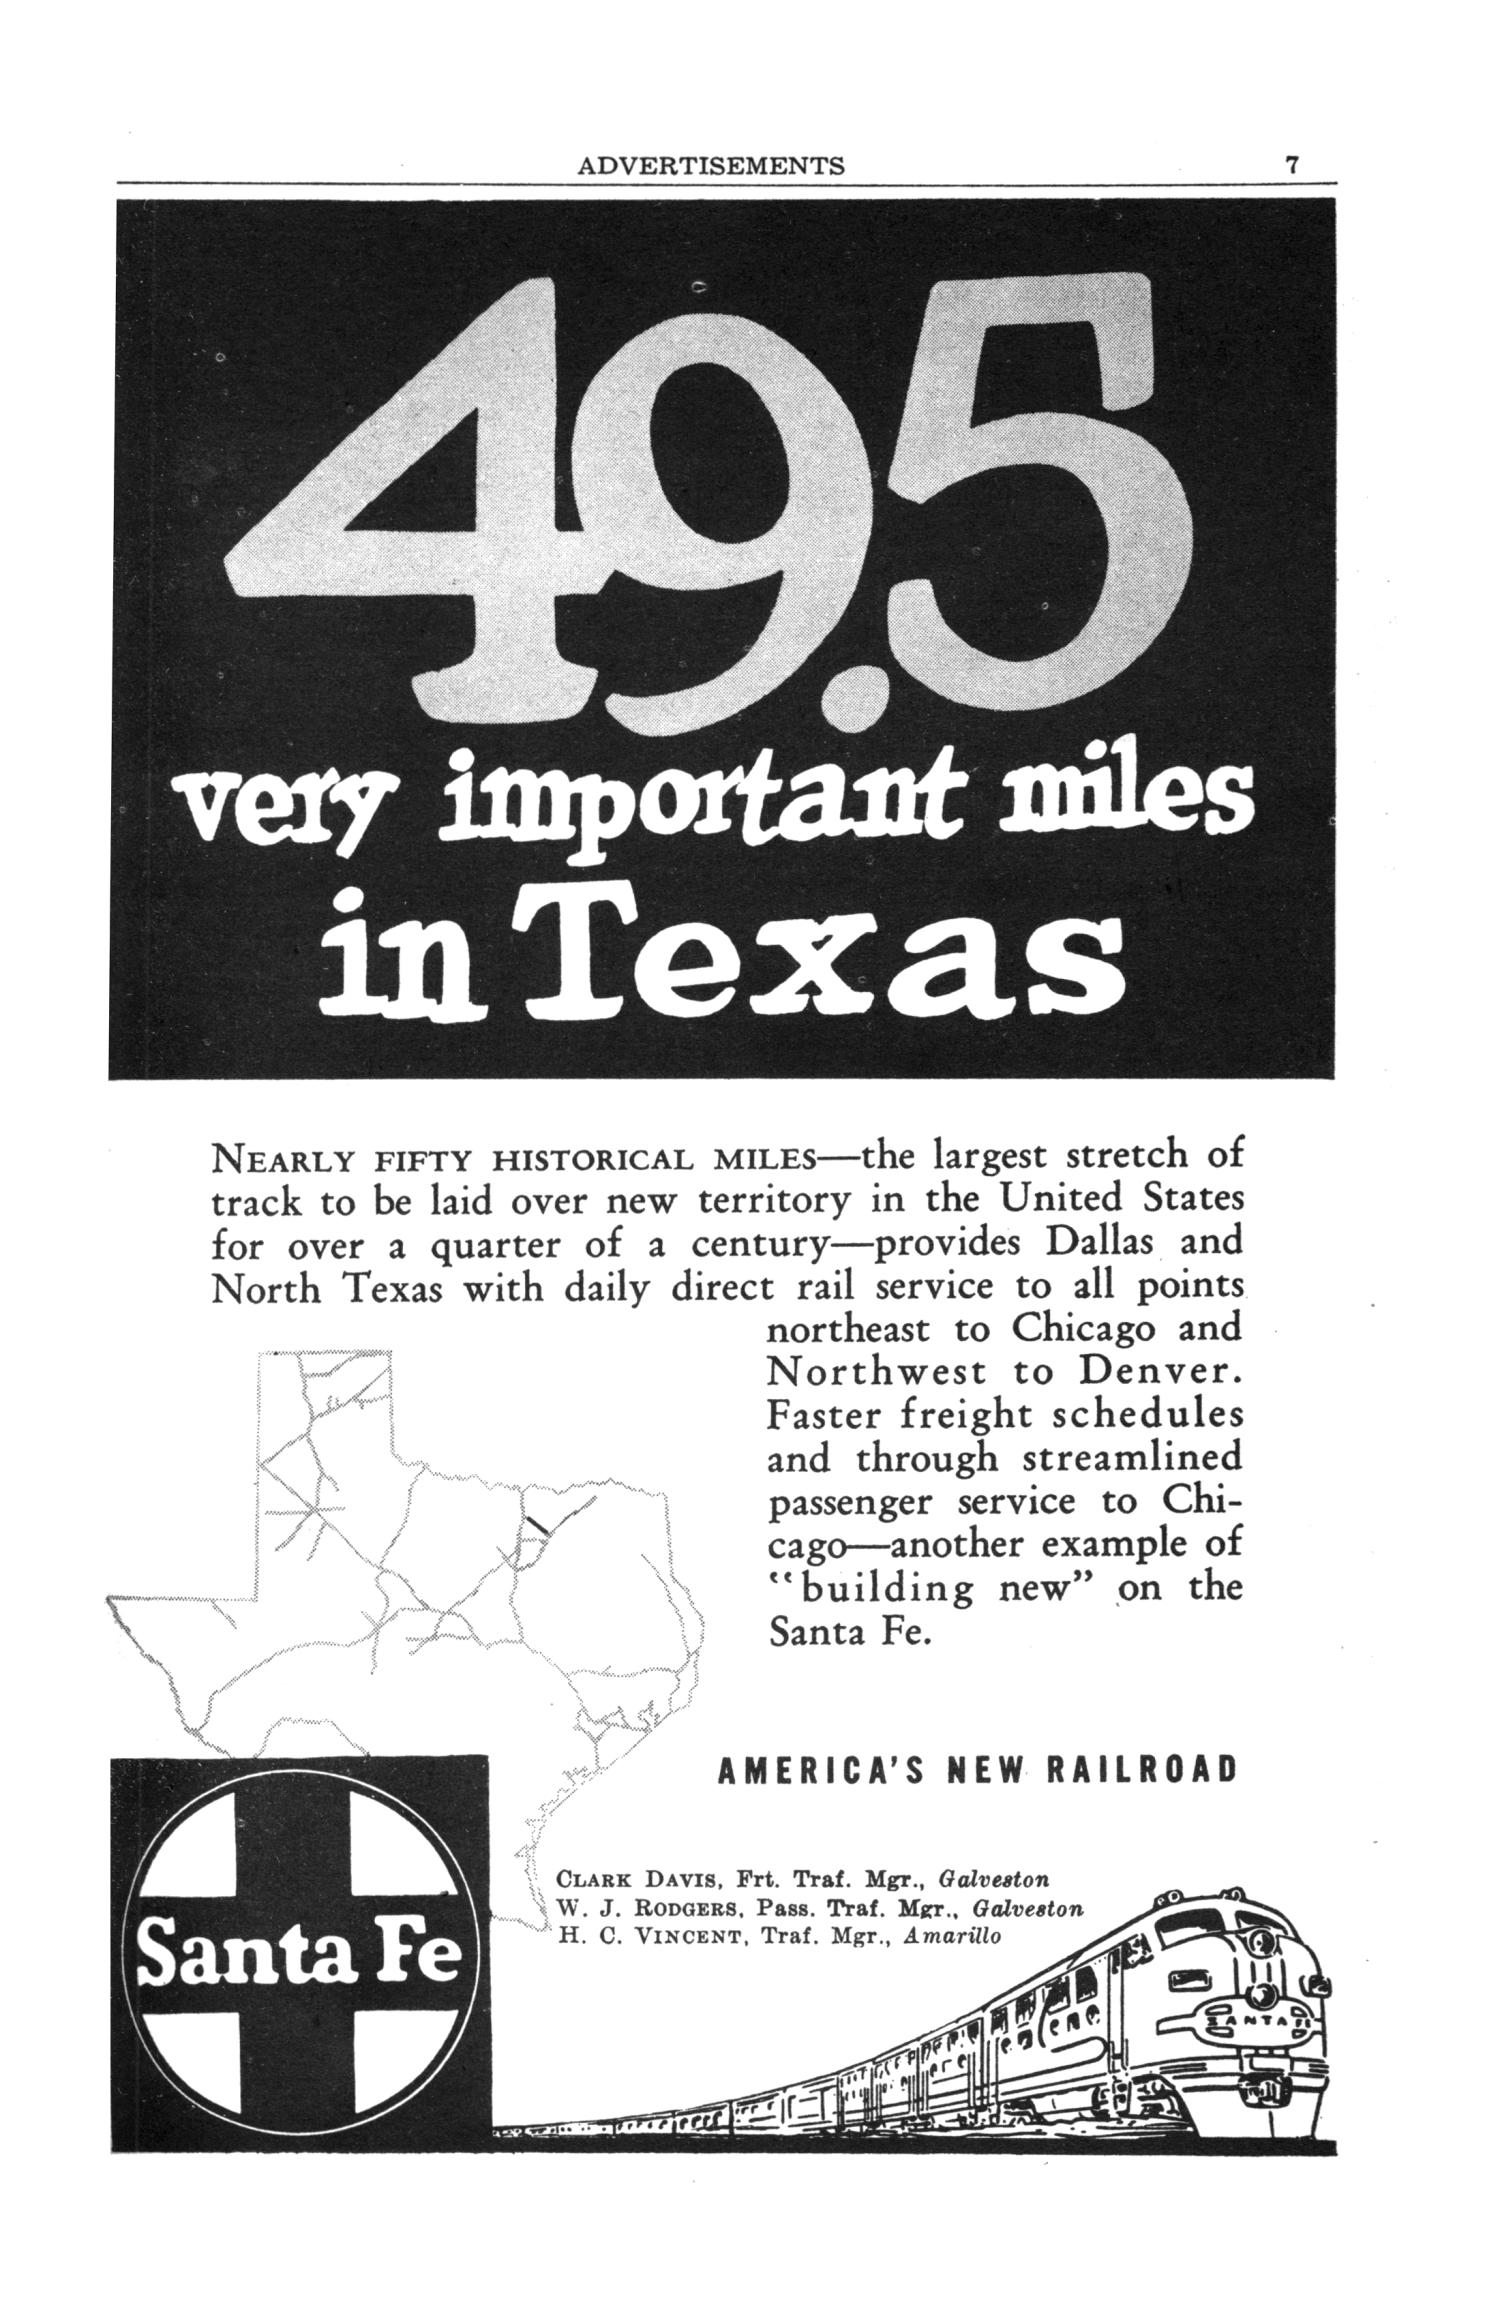 Texas Almanac, 1956-1957
                                                
                                                    7
                                                